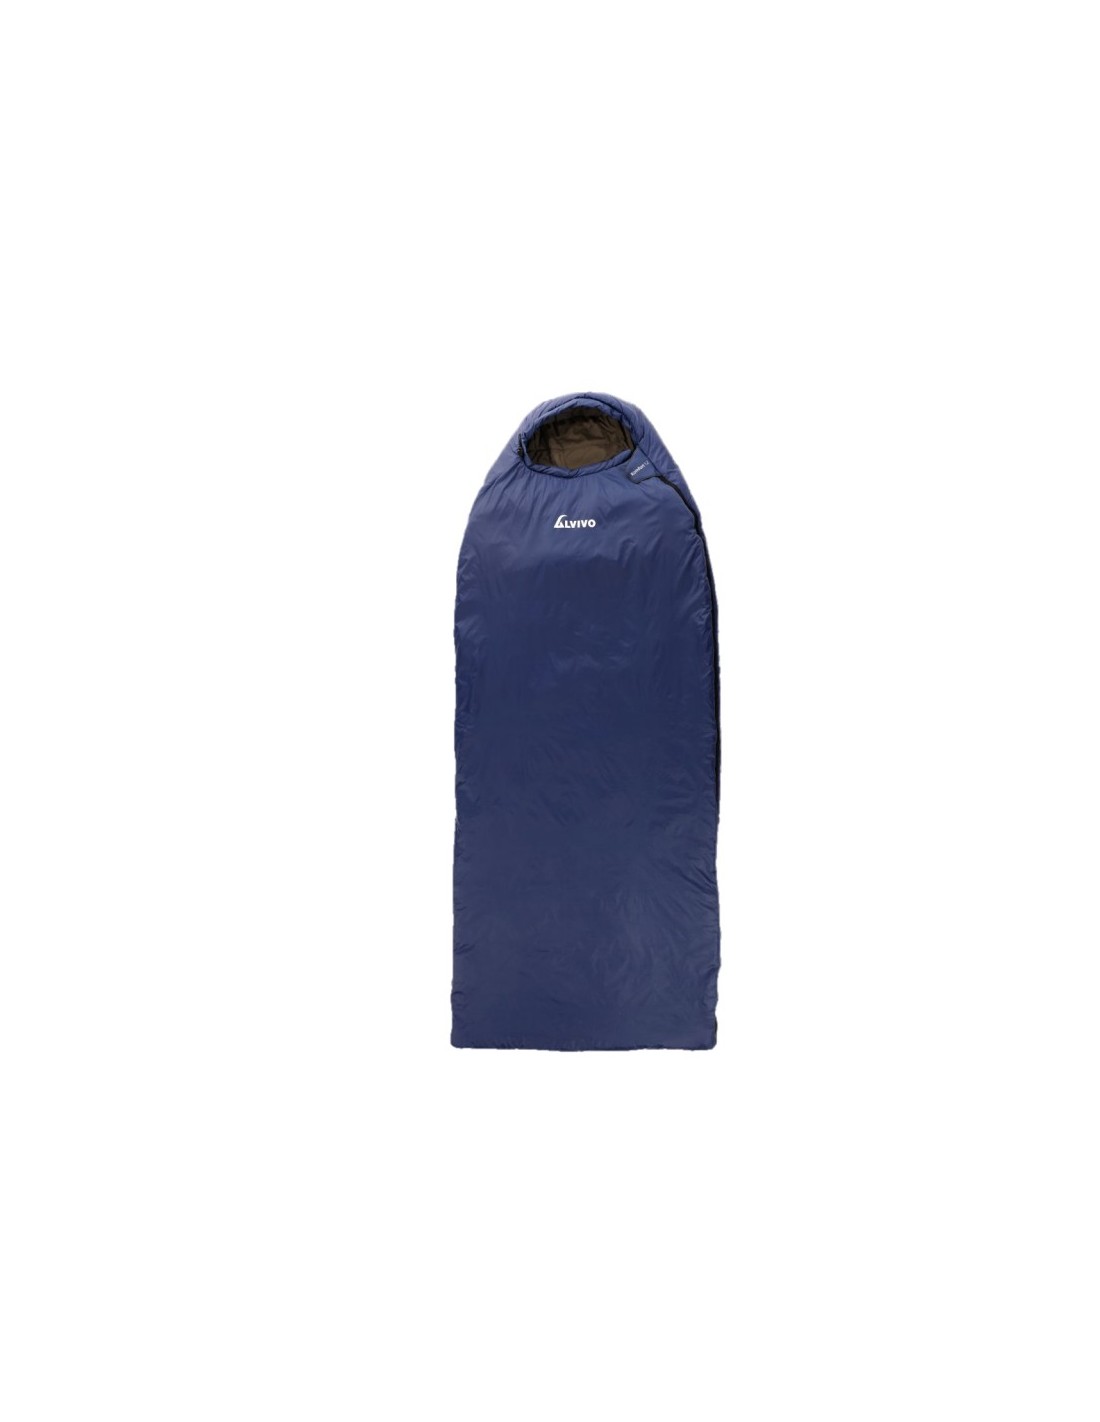 Alvivo KOMFORT 12 - Blau/Grau Schlafsackzipper - Links, Schlafsackverwendung - Trekking & Camping, Schlafsacklänge - 206 bis 215 cm, von Alvivo